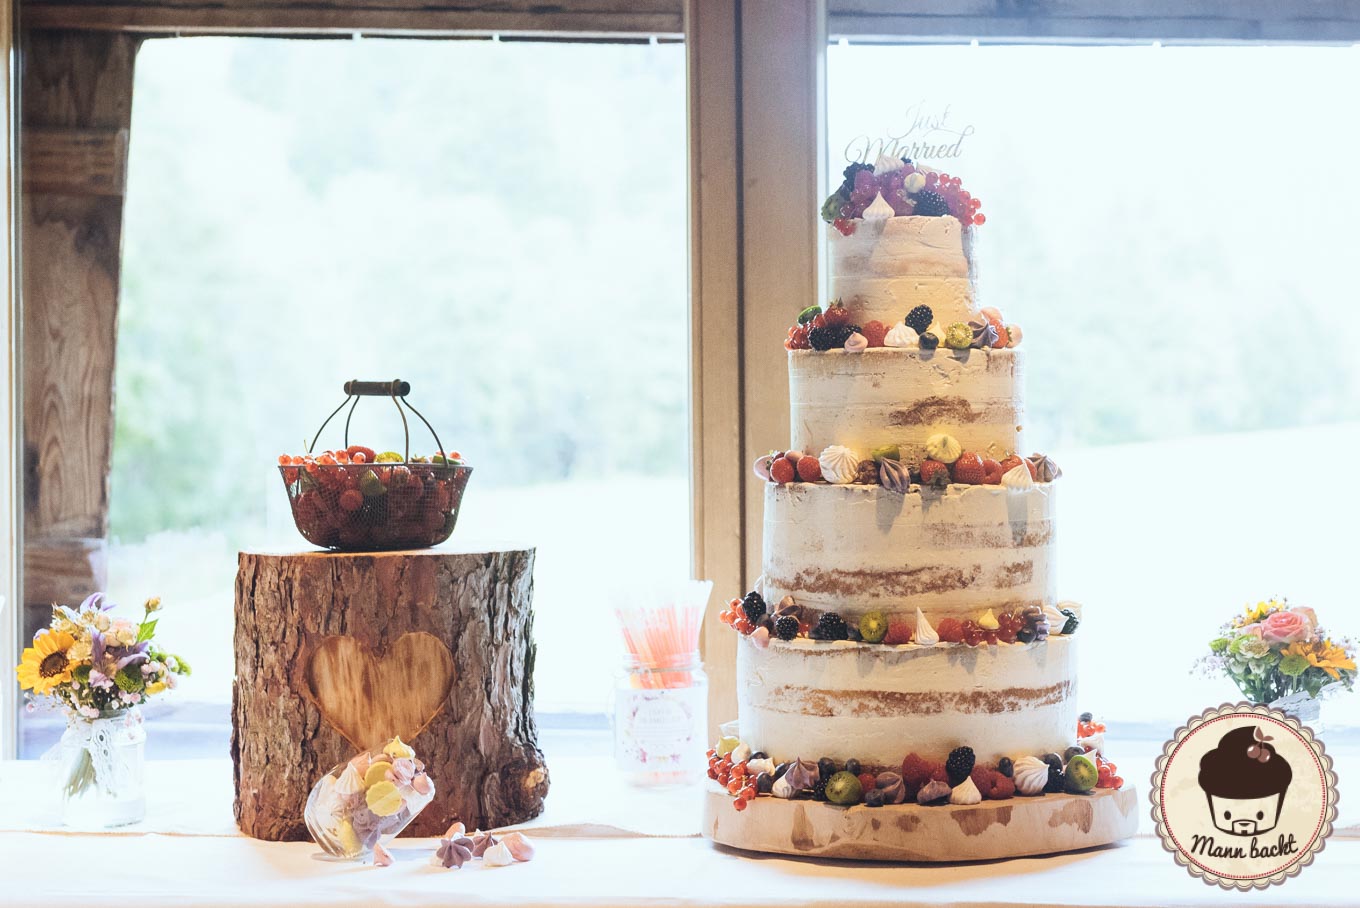 wedding-cake-hochzeitstorte-mann-backt-marian-moschen-naked-cake-10-von-10